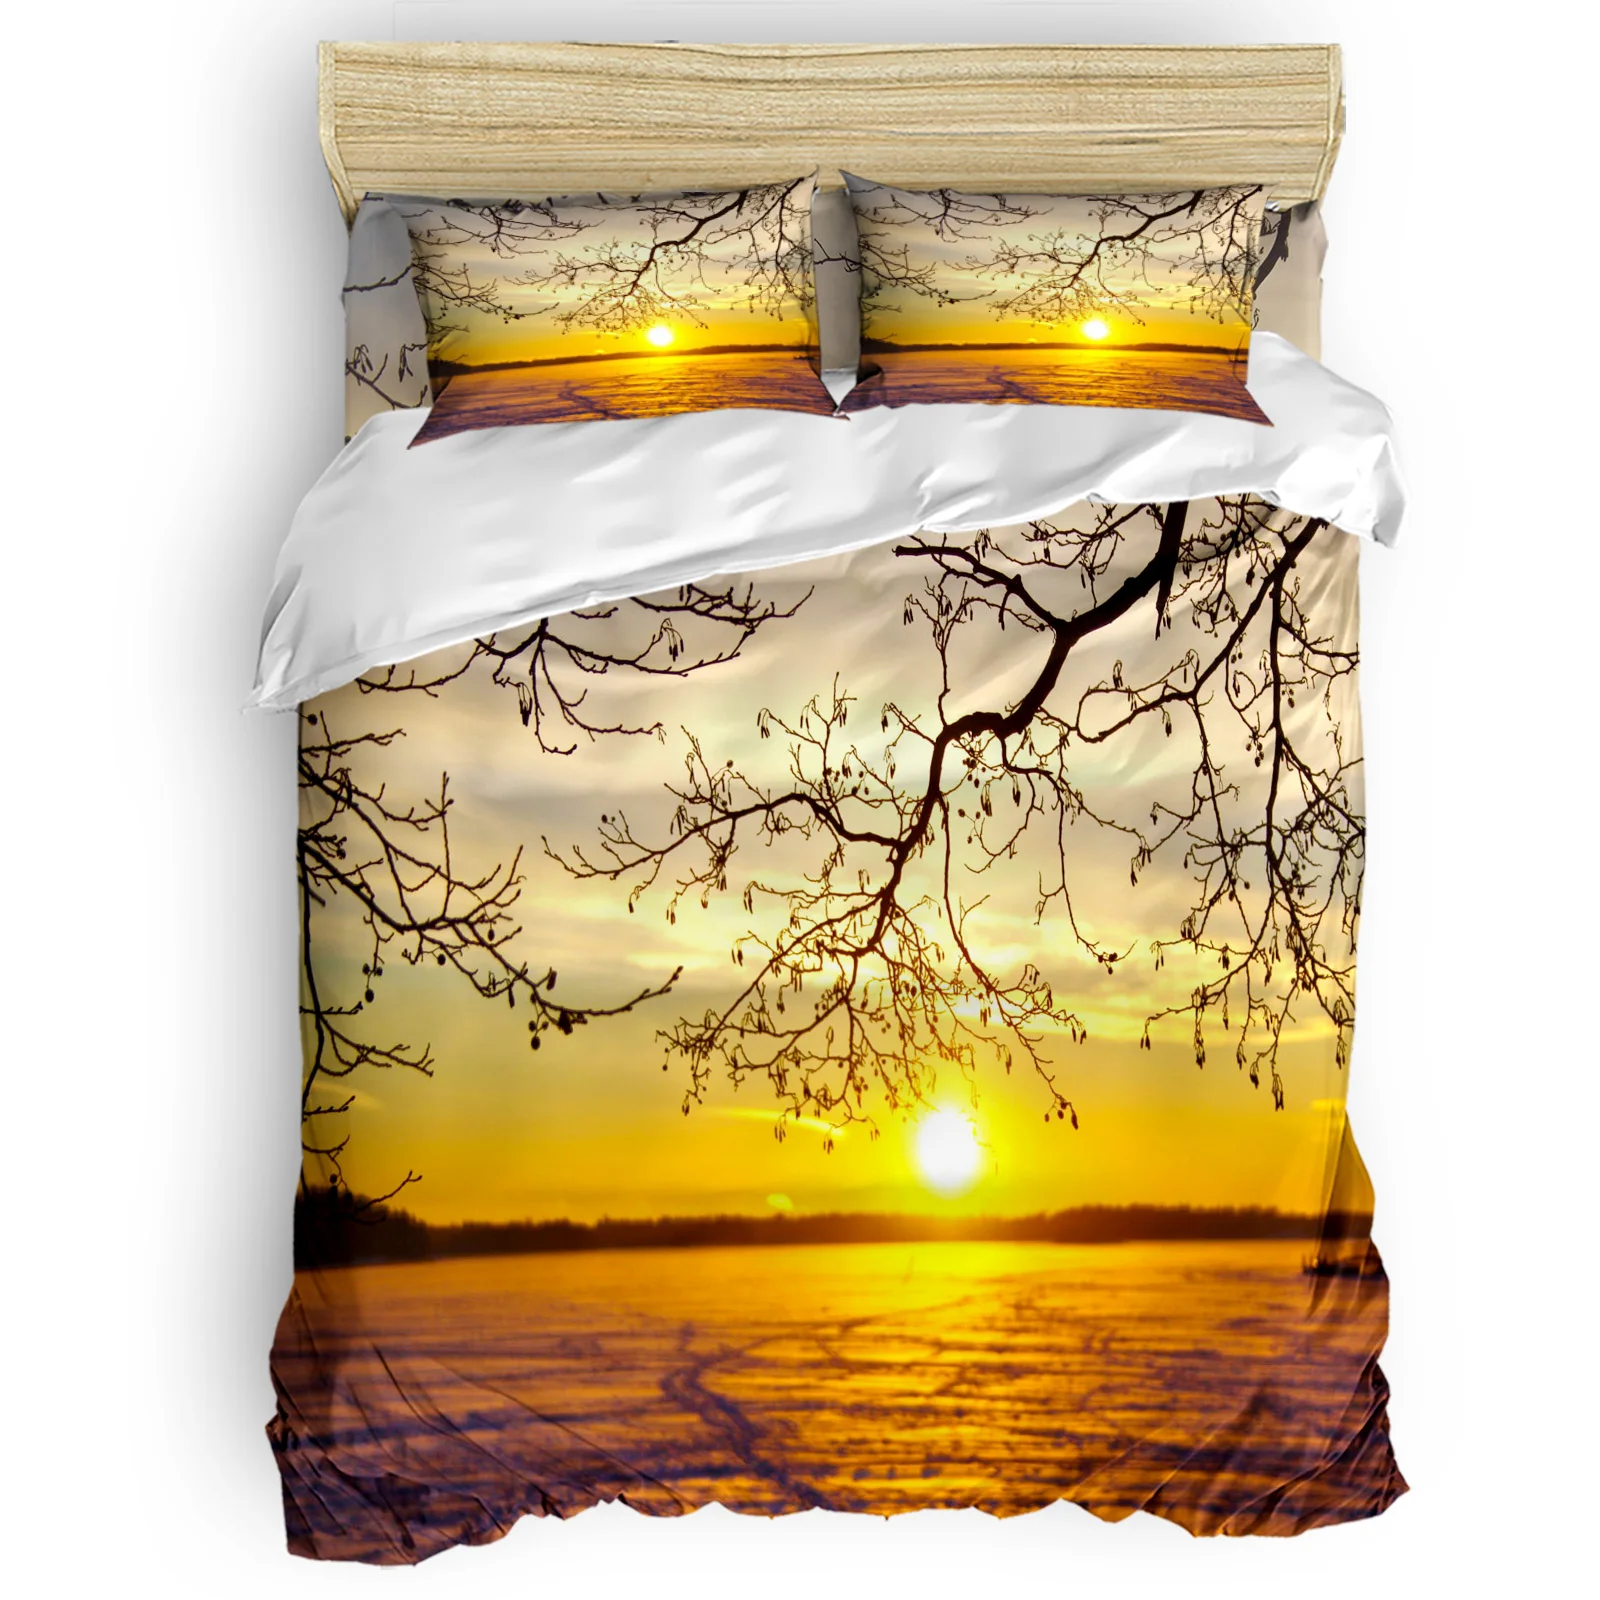 

Море солнце небо облака волны закат Twigs удобные бытовые товары спальня кровать роскошный пододеяльник 2/3/4 штук